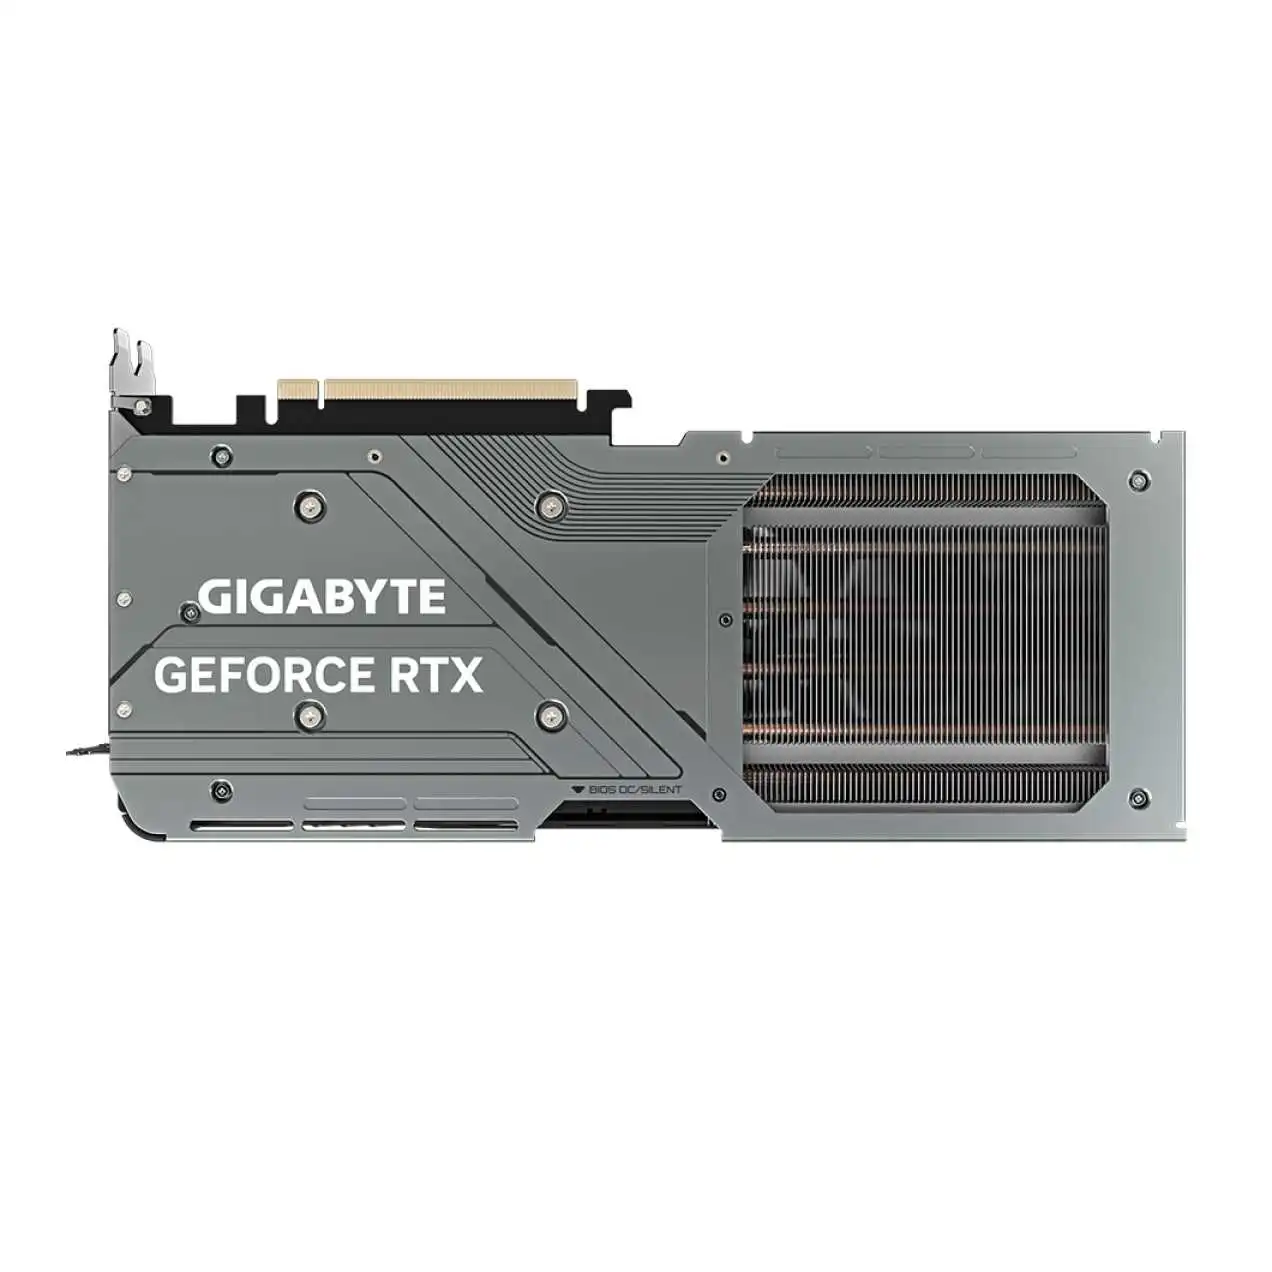 gIgabyte-gv-n4070gamIng-oc-12gd-4070-192bIt-12g-ürün-resmi